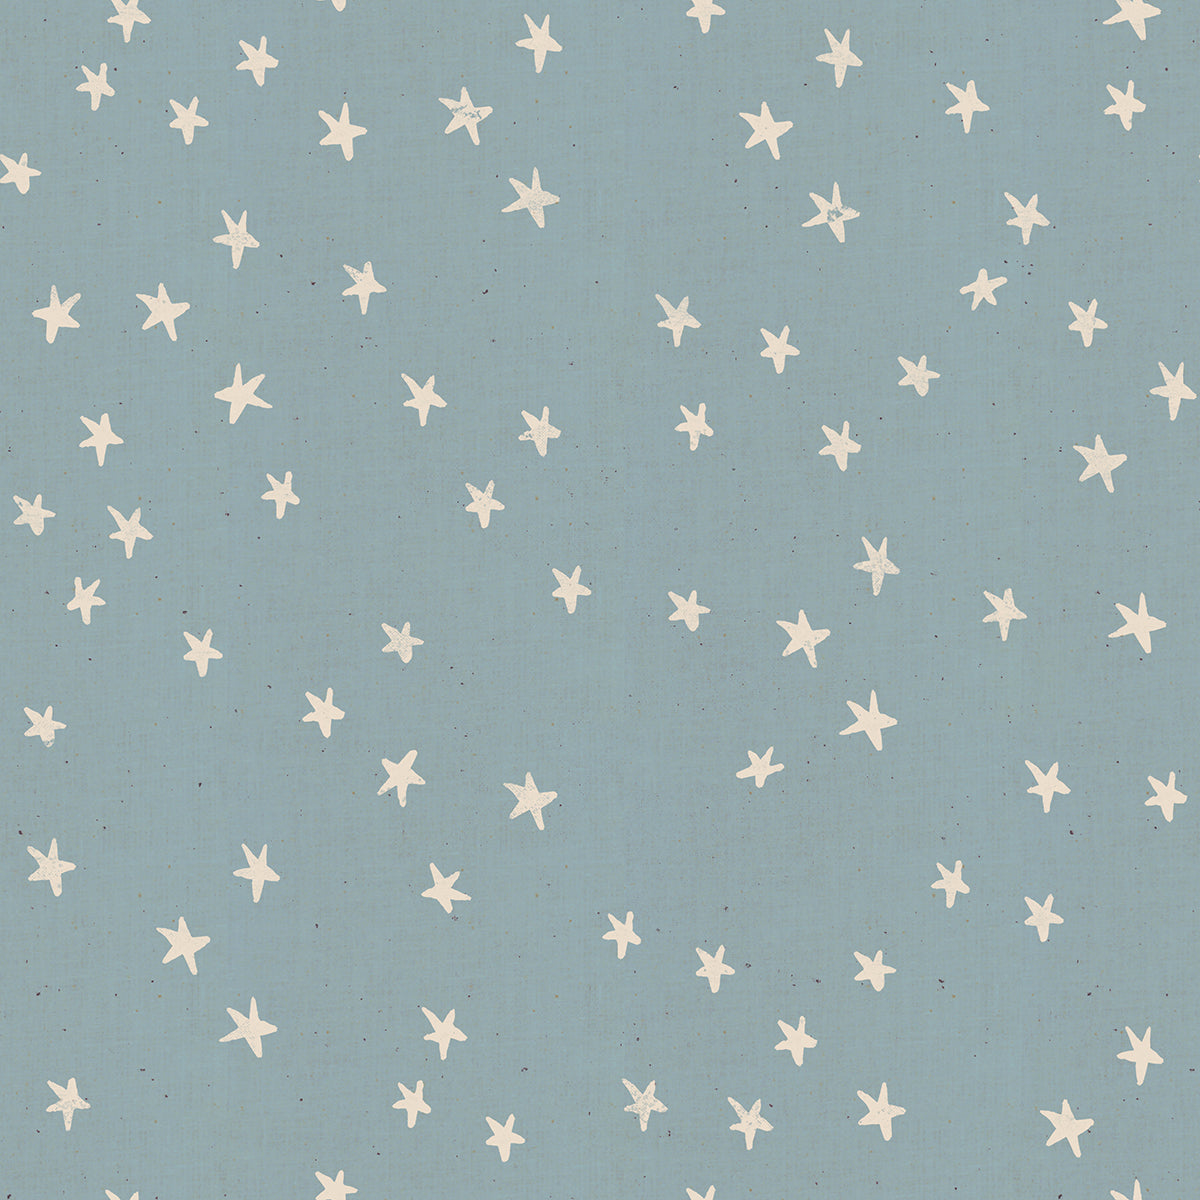 Starry by Alexia Abegg : Soft Blue : Ruby Star Society